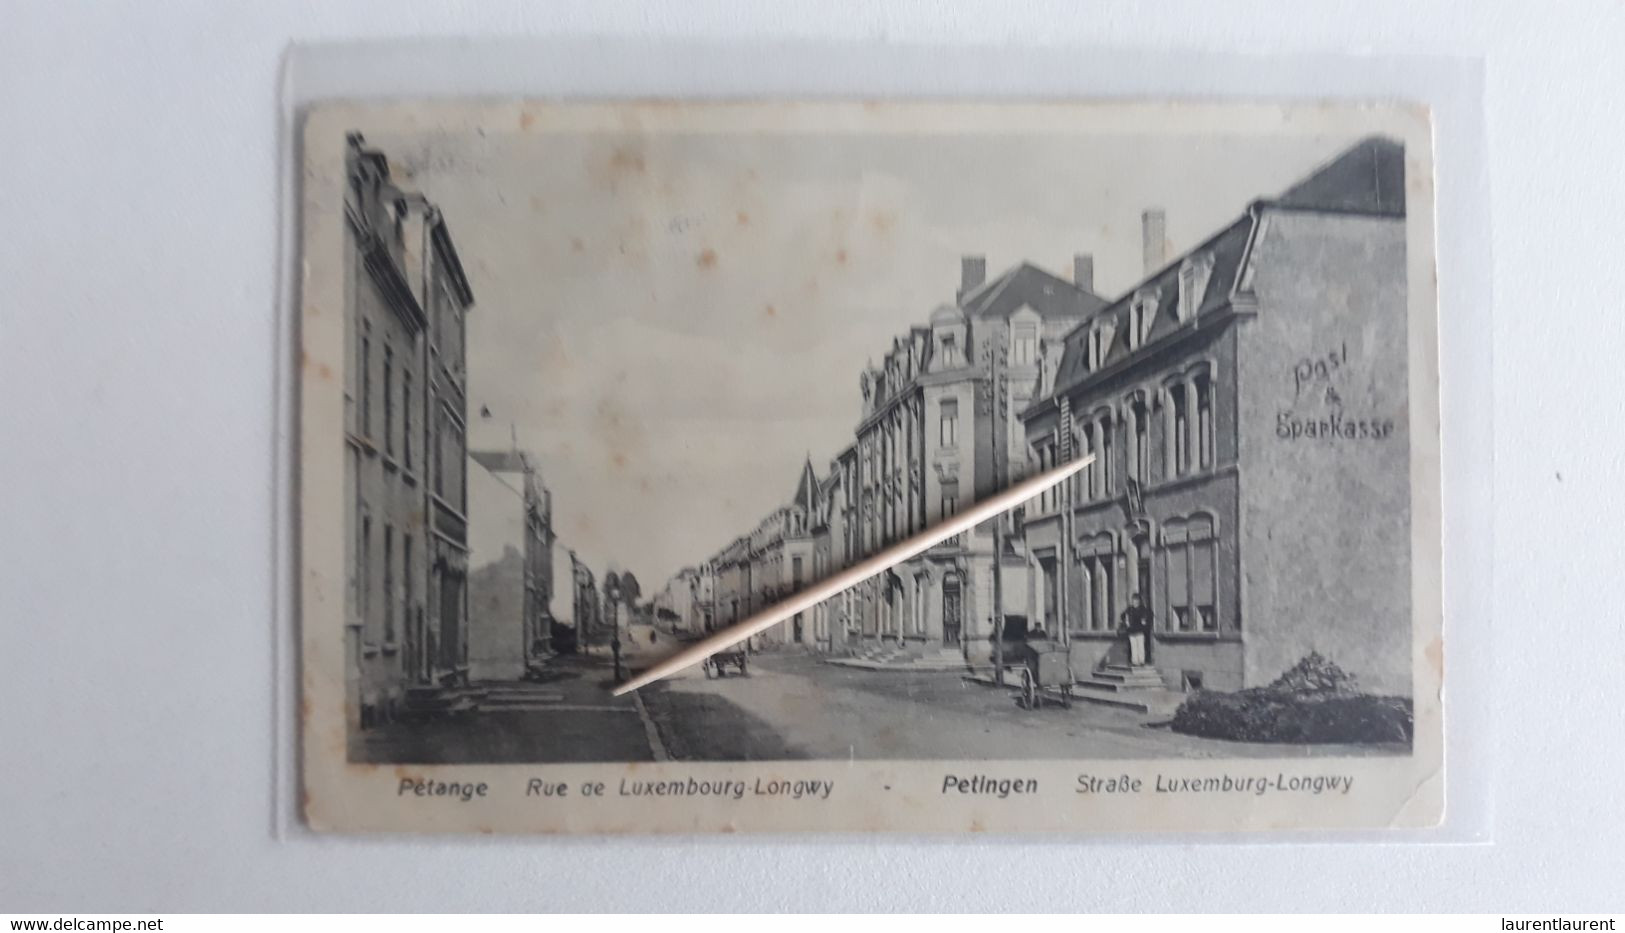 PETANGE - Rue De Luxembourg Longwy - 1917 - Pétange